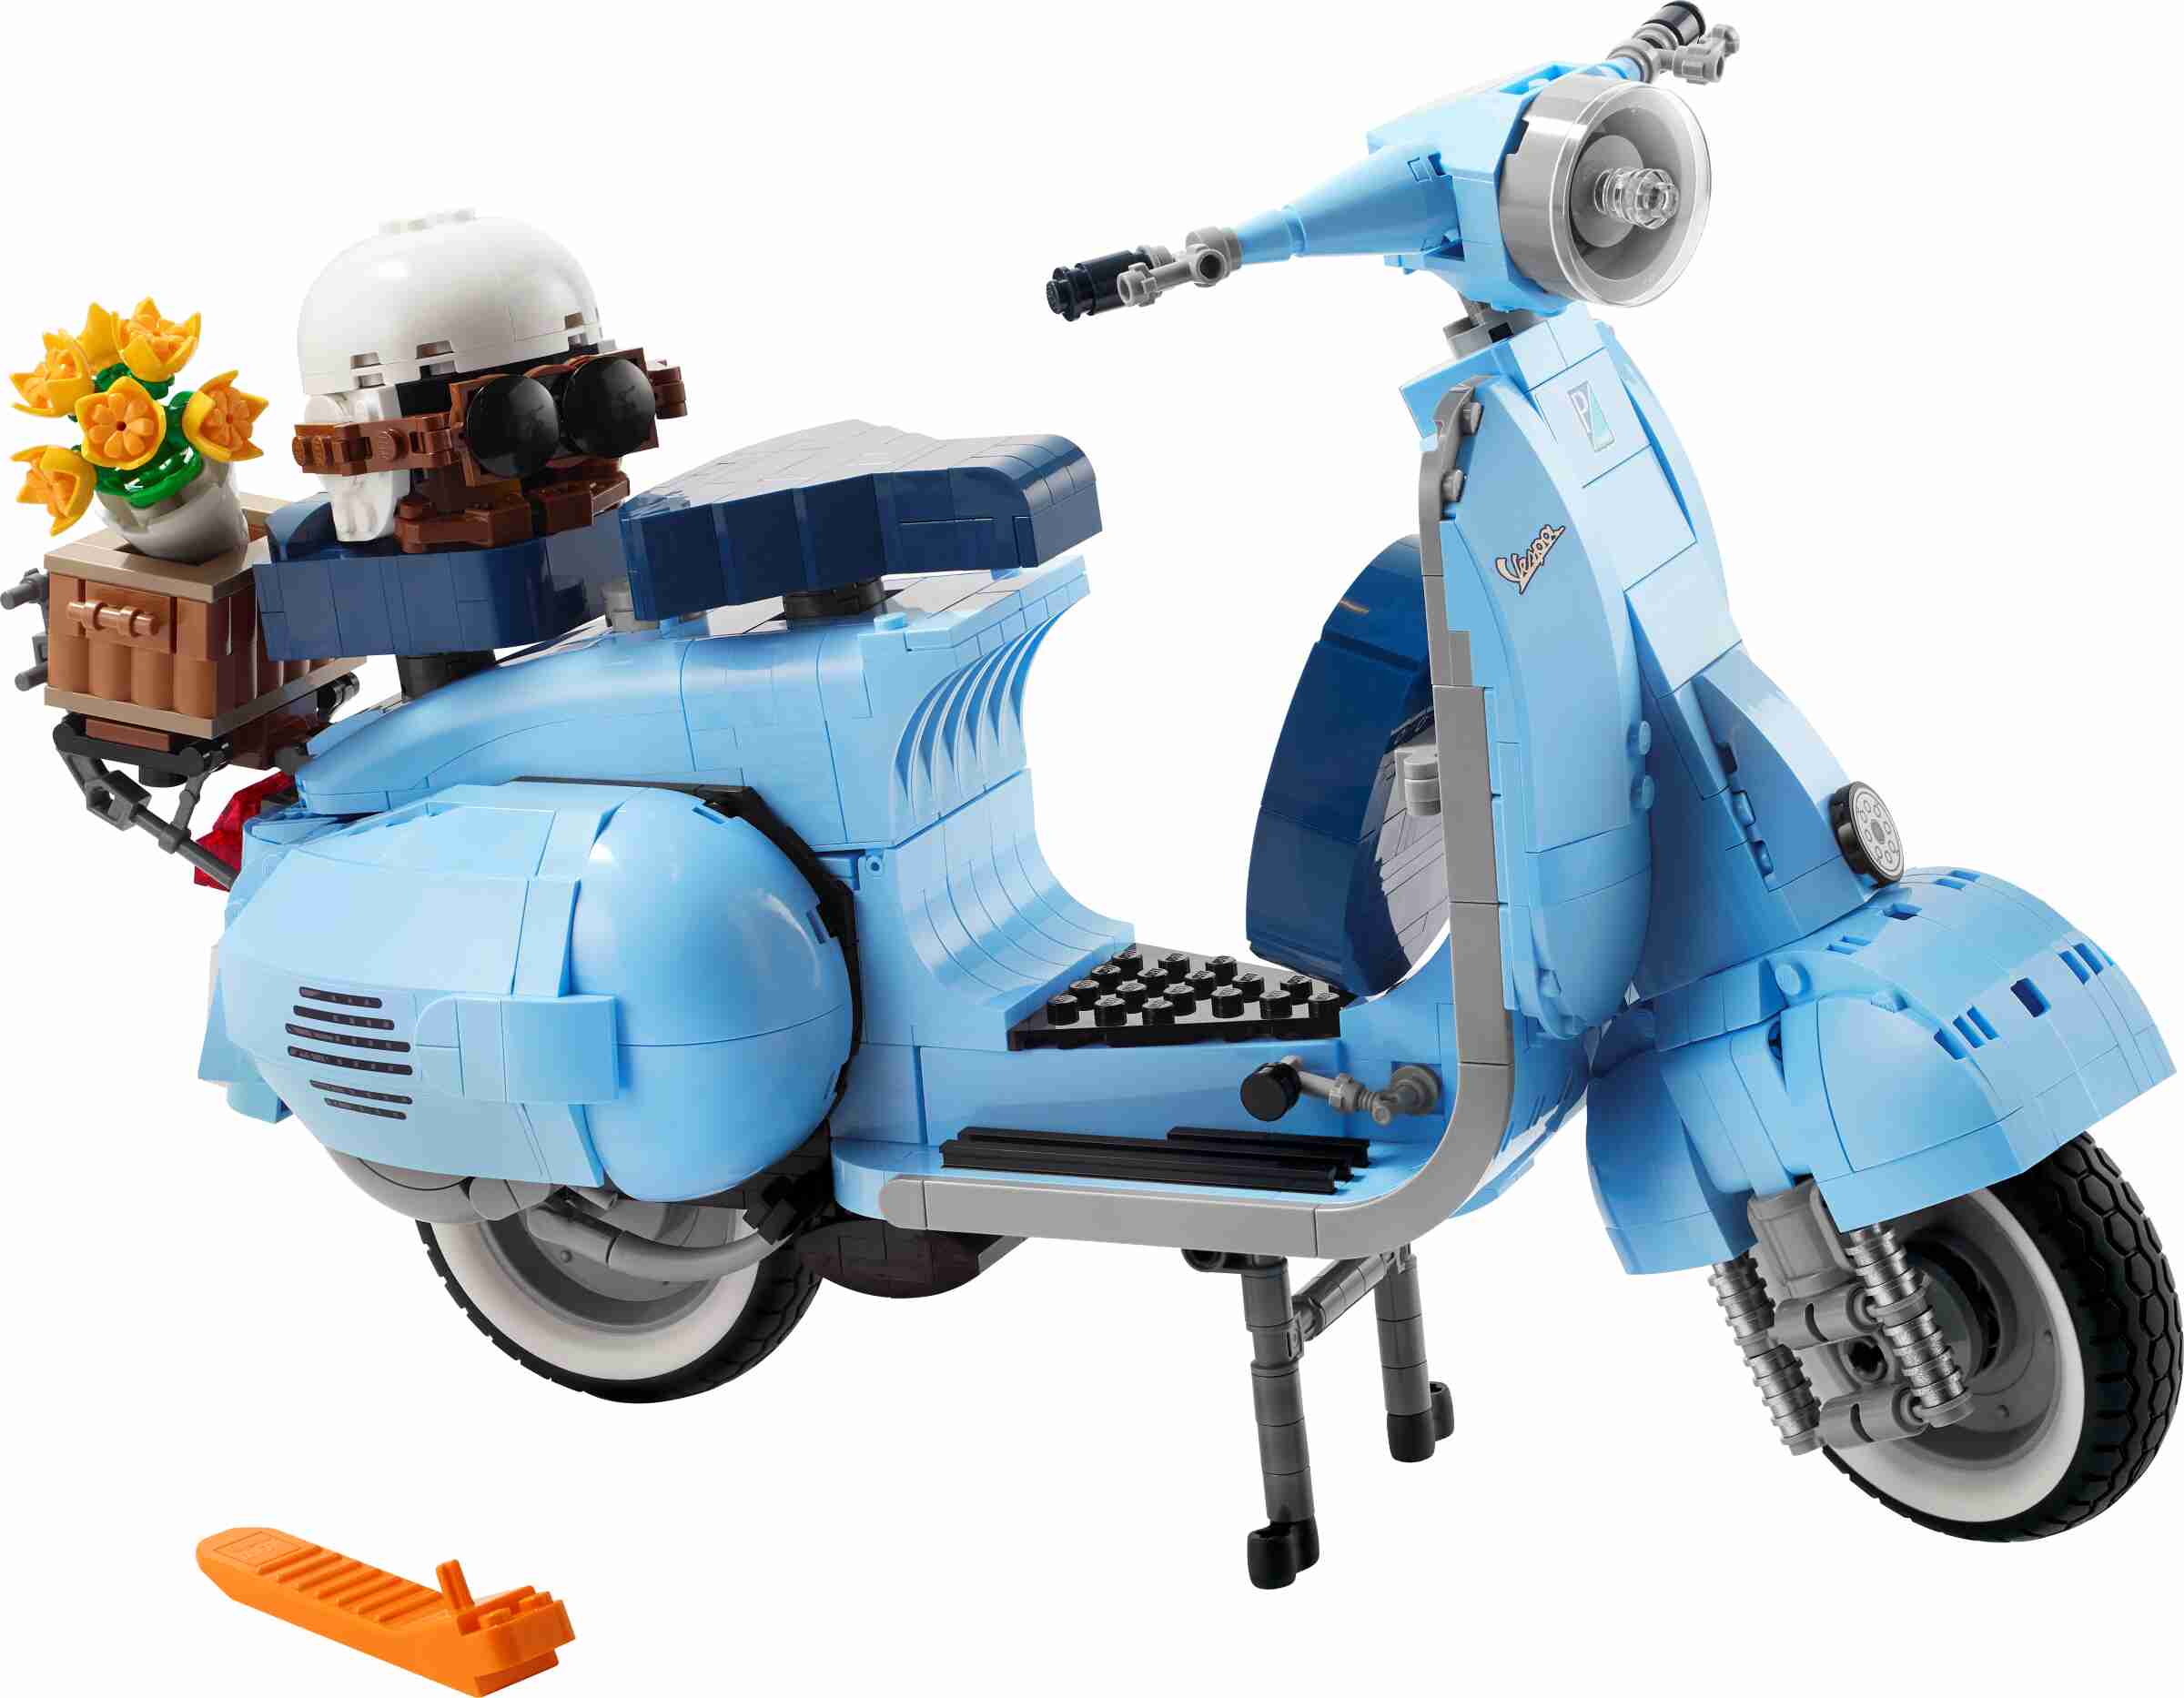 LEGO 10298 ICONS Vespa 125 Modellbausatz, Vespa Piaggio